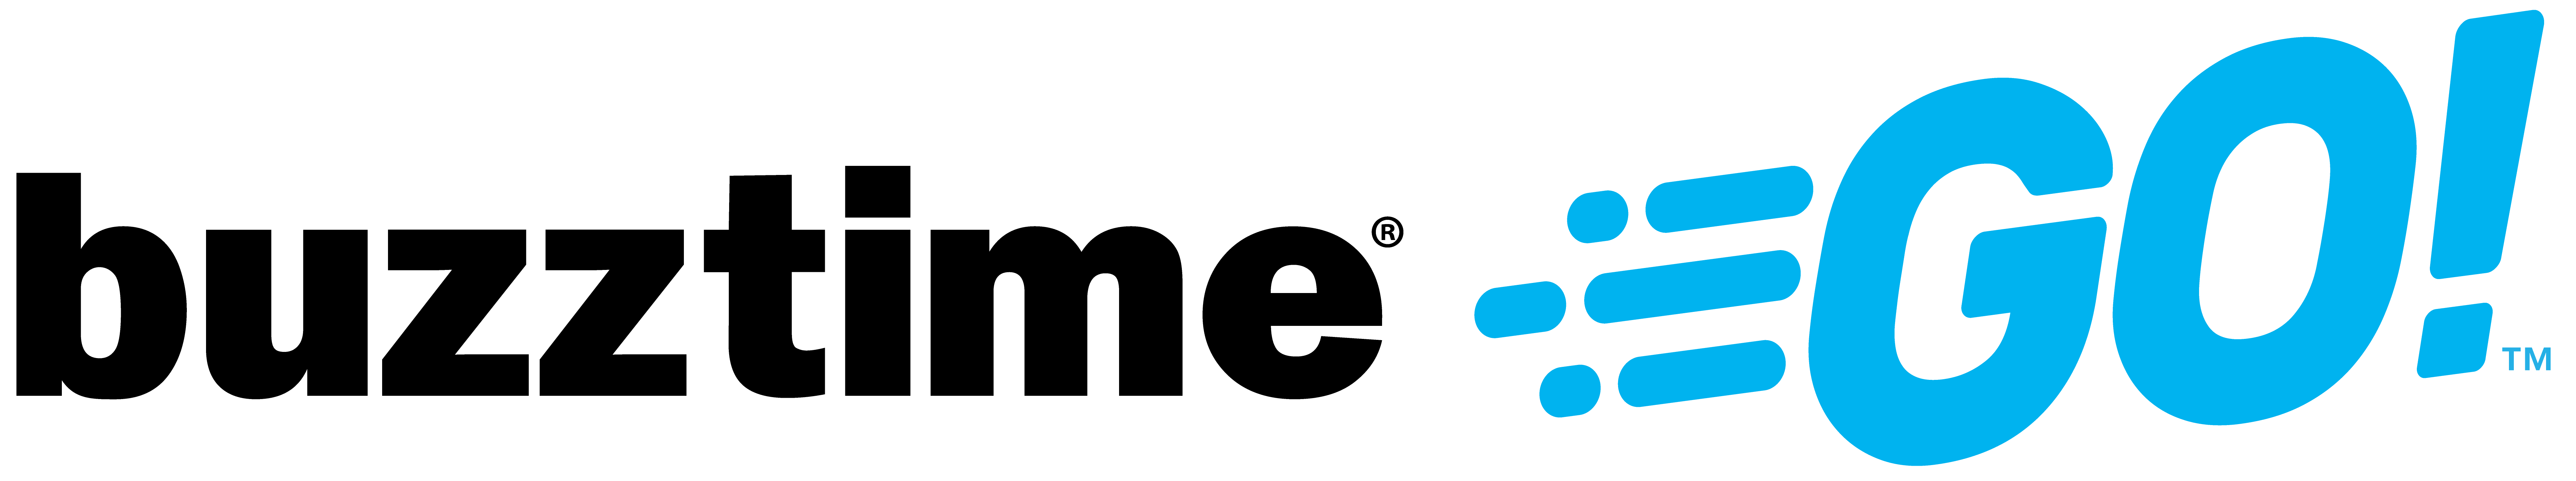 Buzztime GO Logo